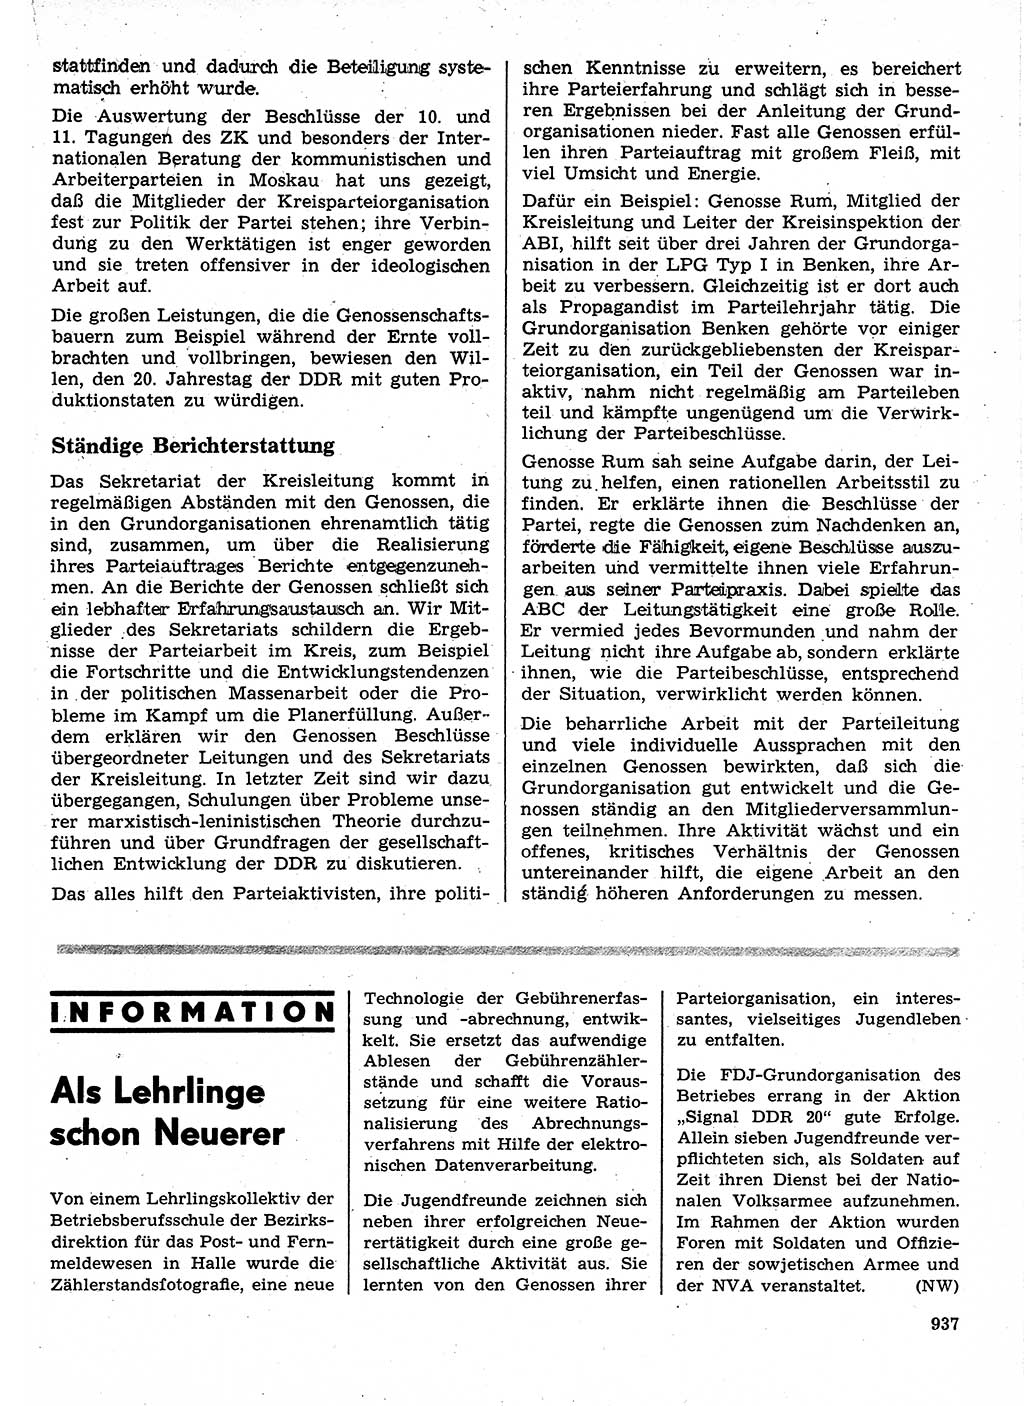 Neuer Weg (NW), Organ des Zentralkomitees (ZK) der SED (Sozialistische Einheitspartei Deutschlands) für Fragen des Parteilebens, 24. Jahrgang [Deutsche Demokratische Republik (DDR)] 1969, Seite 937 (NW ZK SED DDR 1969, S. 937)